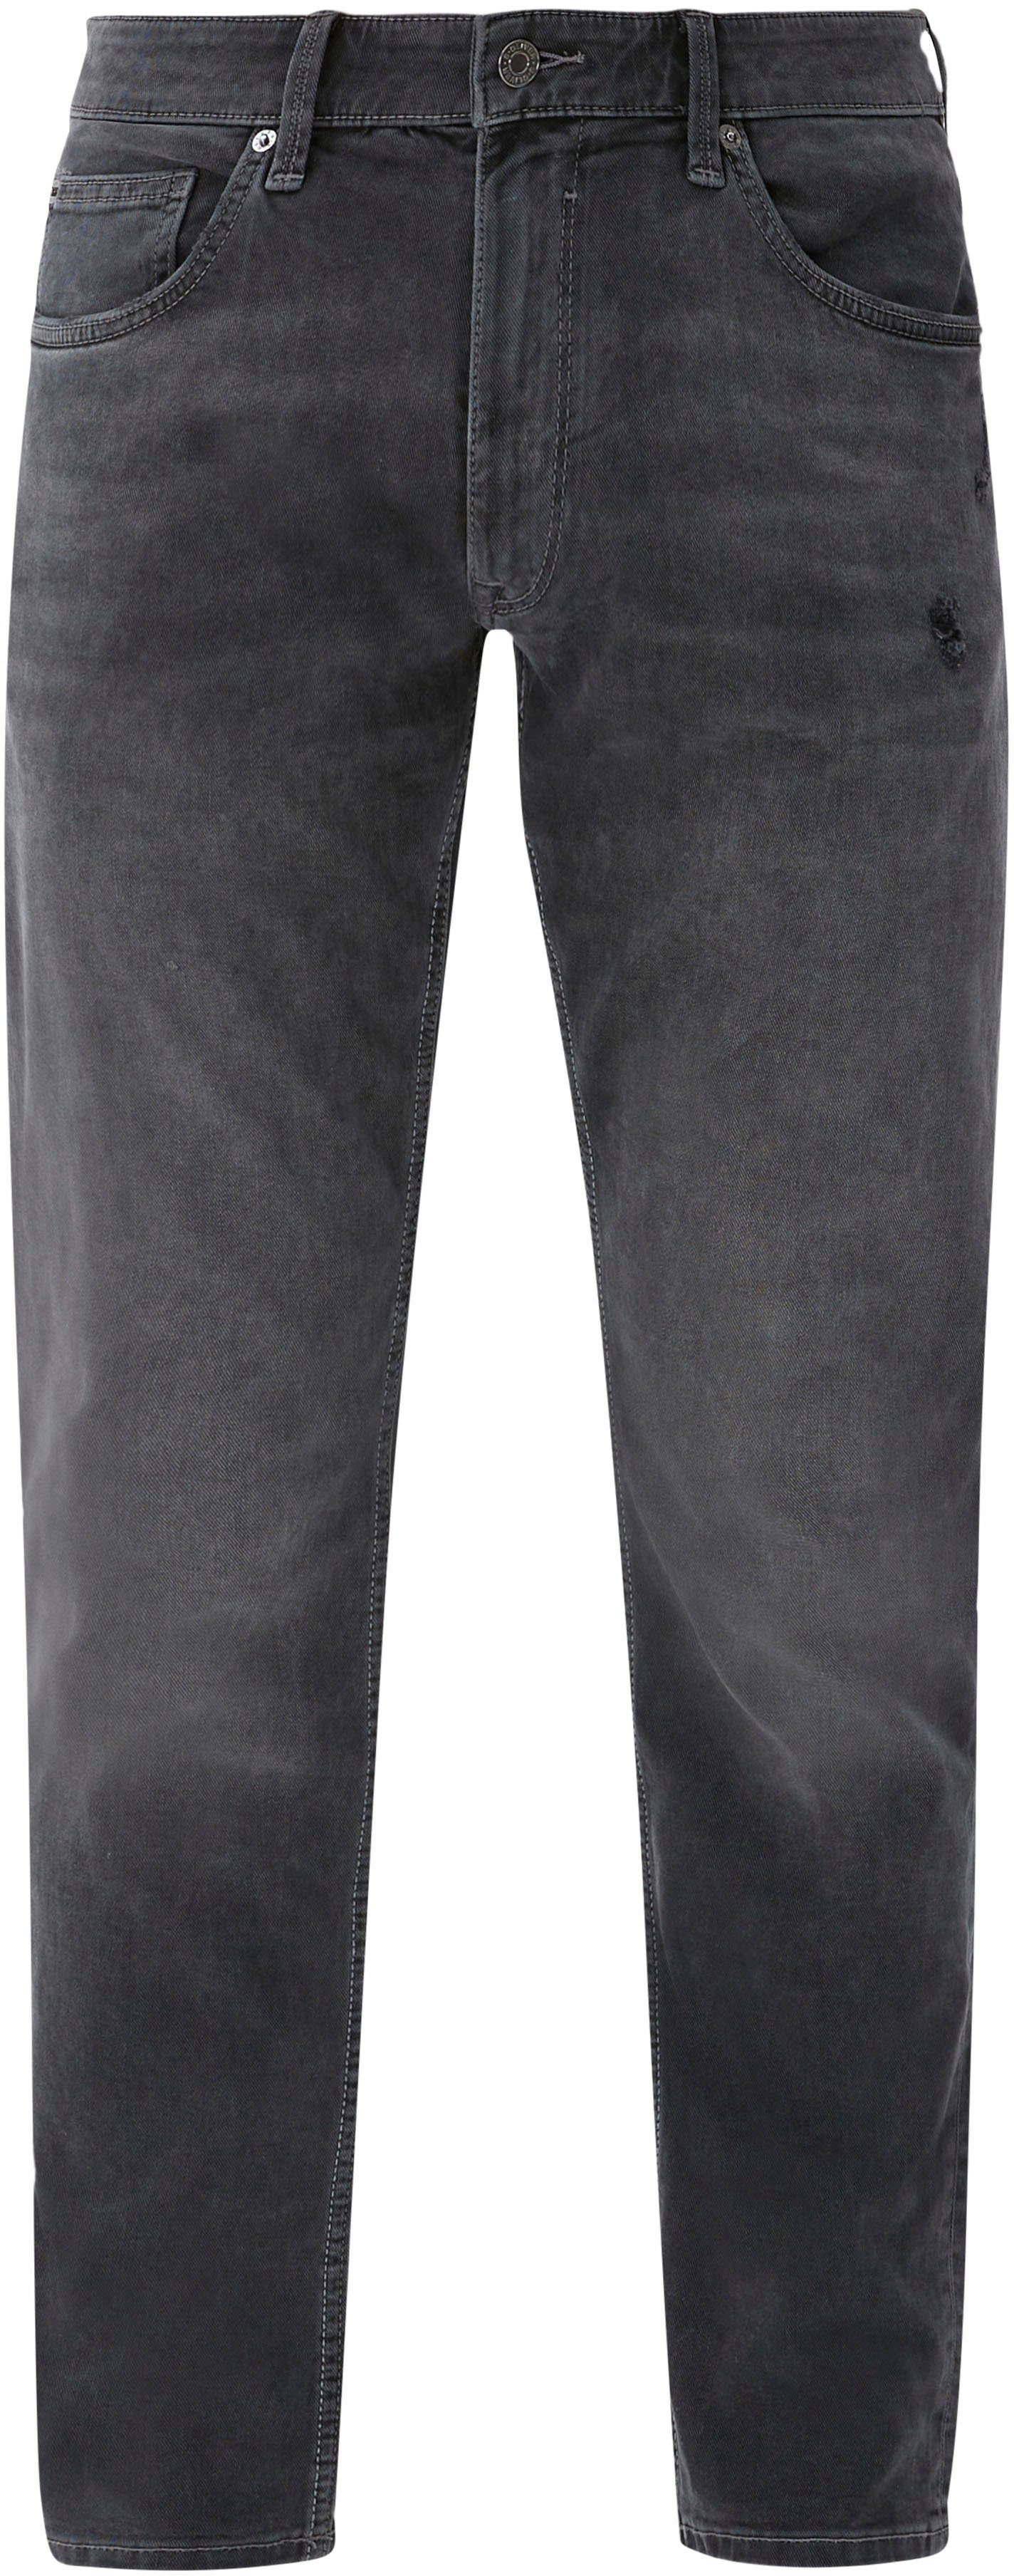 s.Oliver Waschung authentischer Slim-fit-Jeans KEITH anthrazit mit